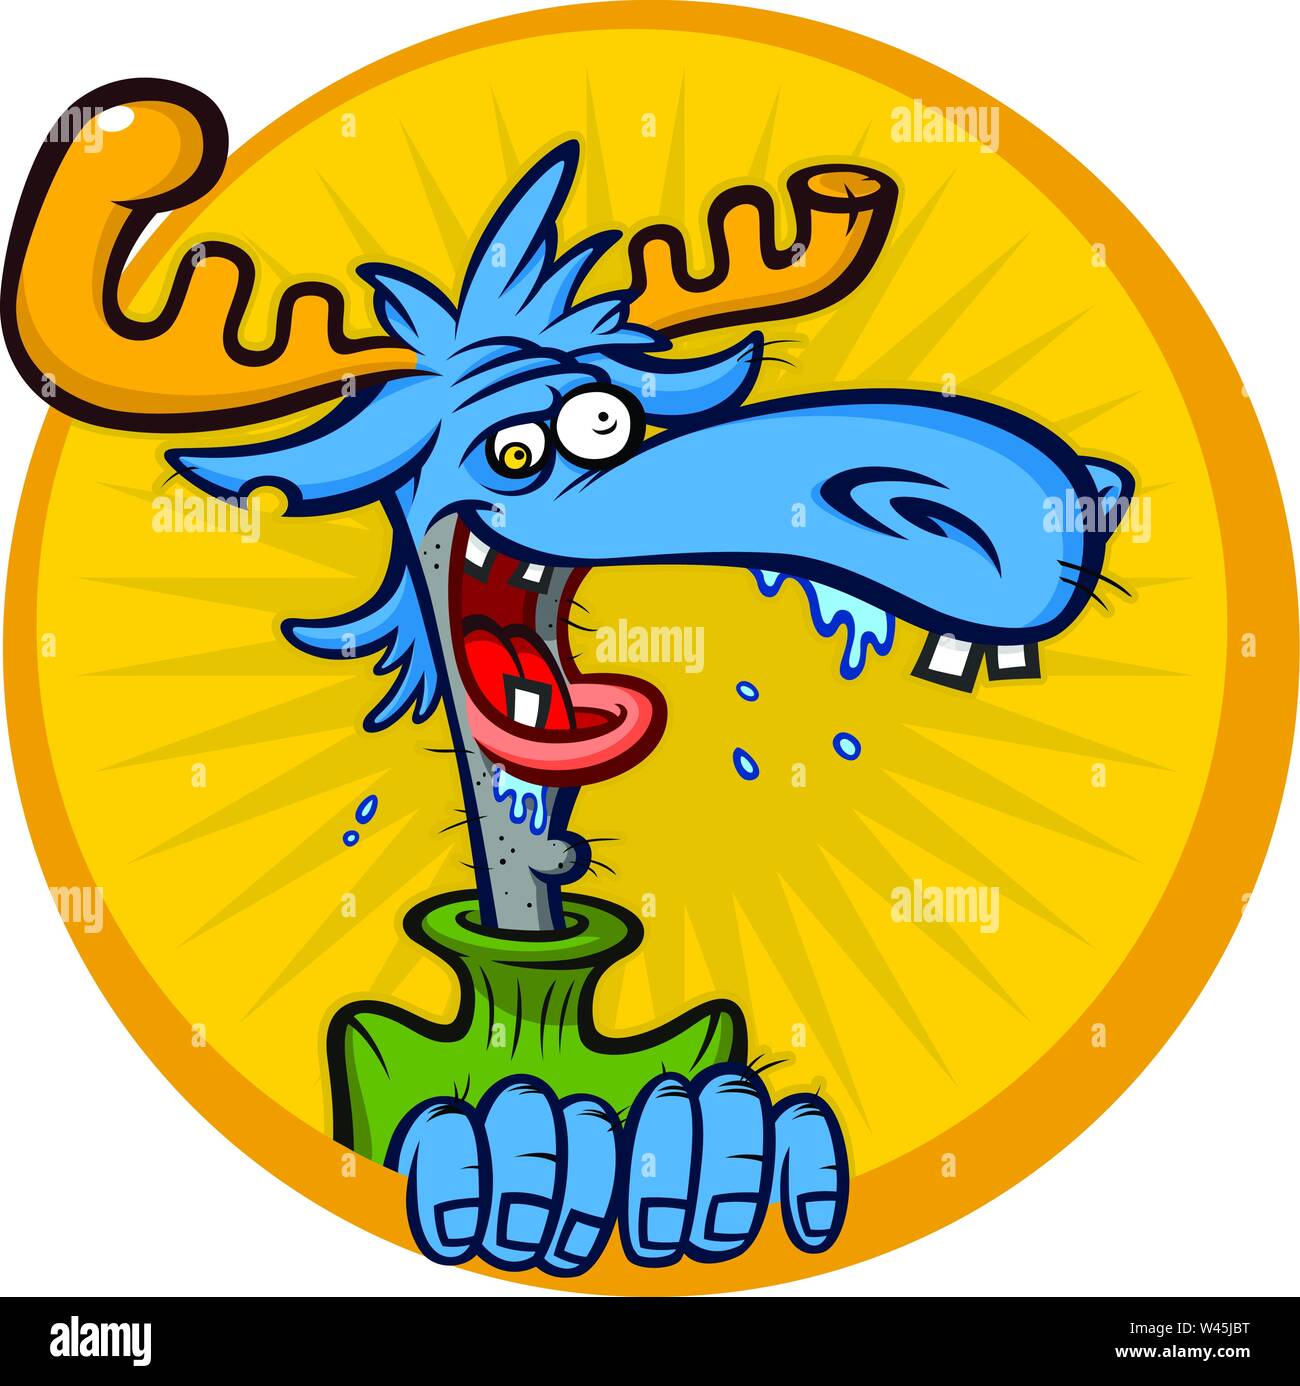 Illustrazione di un cartone animato di alci. Il disegno vettoriale elk in uno stile piatto. Immagine è isolato su sfondo bianco. Emblema, logo, mascotte per l'azienda. Comi Illustrazione Vettoriale